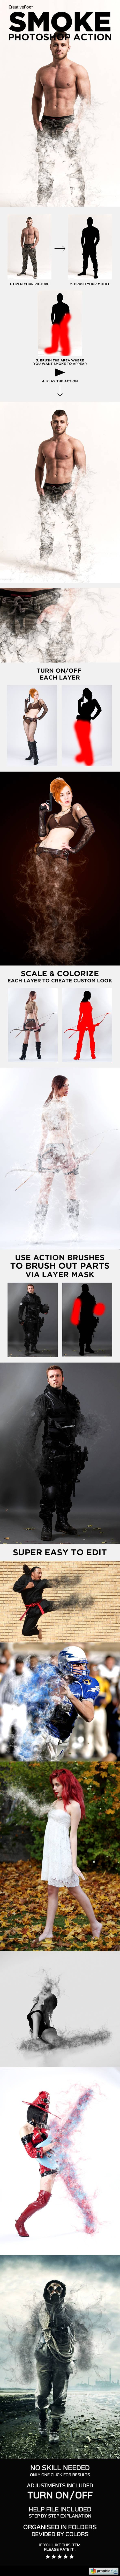 Smoke Photoshop Action - Smoke Effect Creator Action